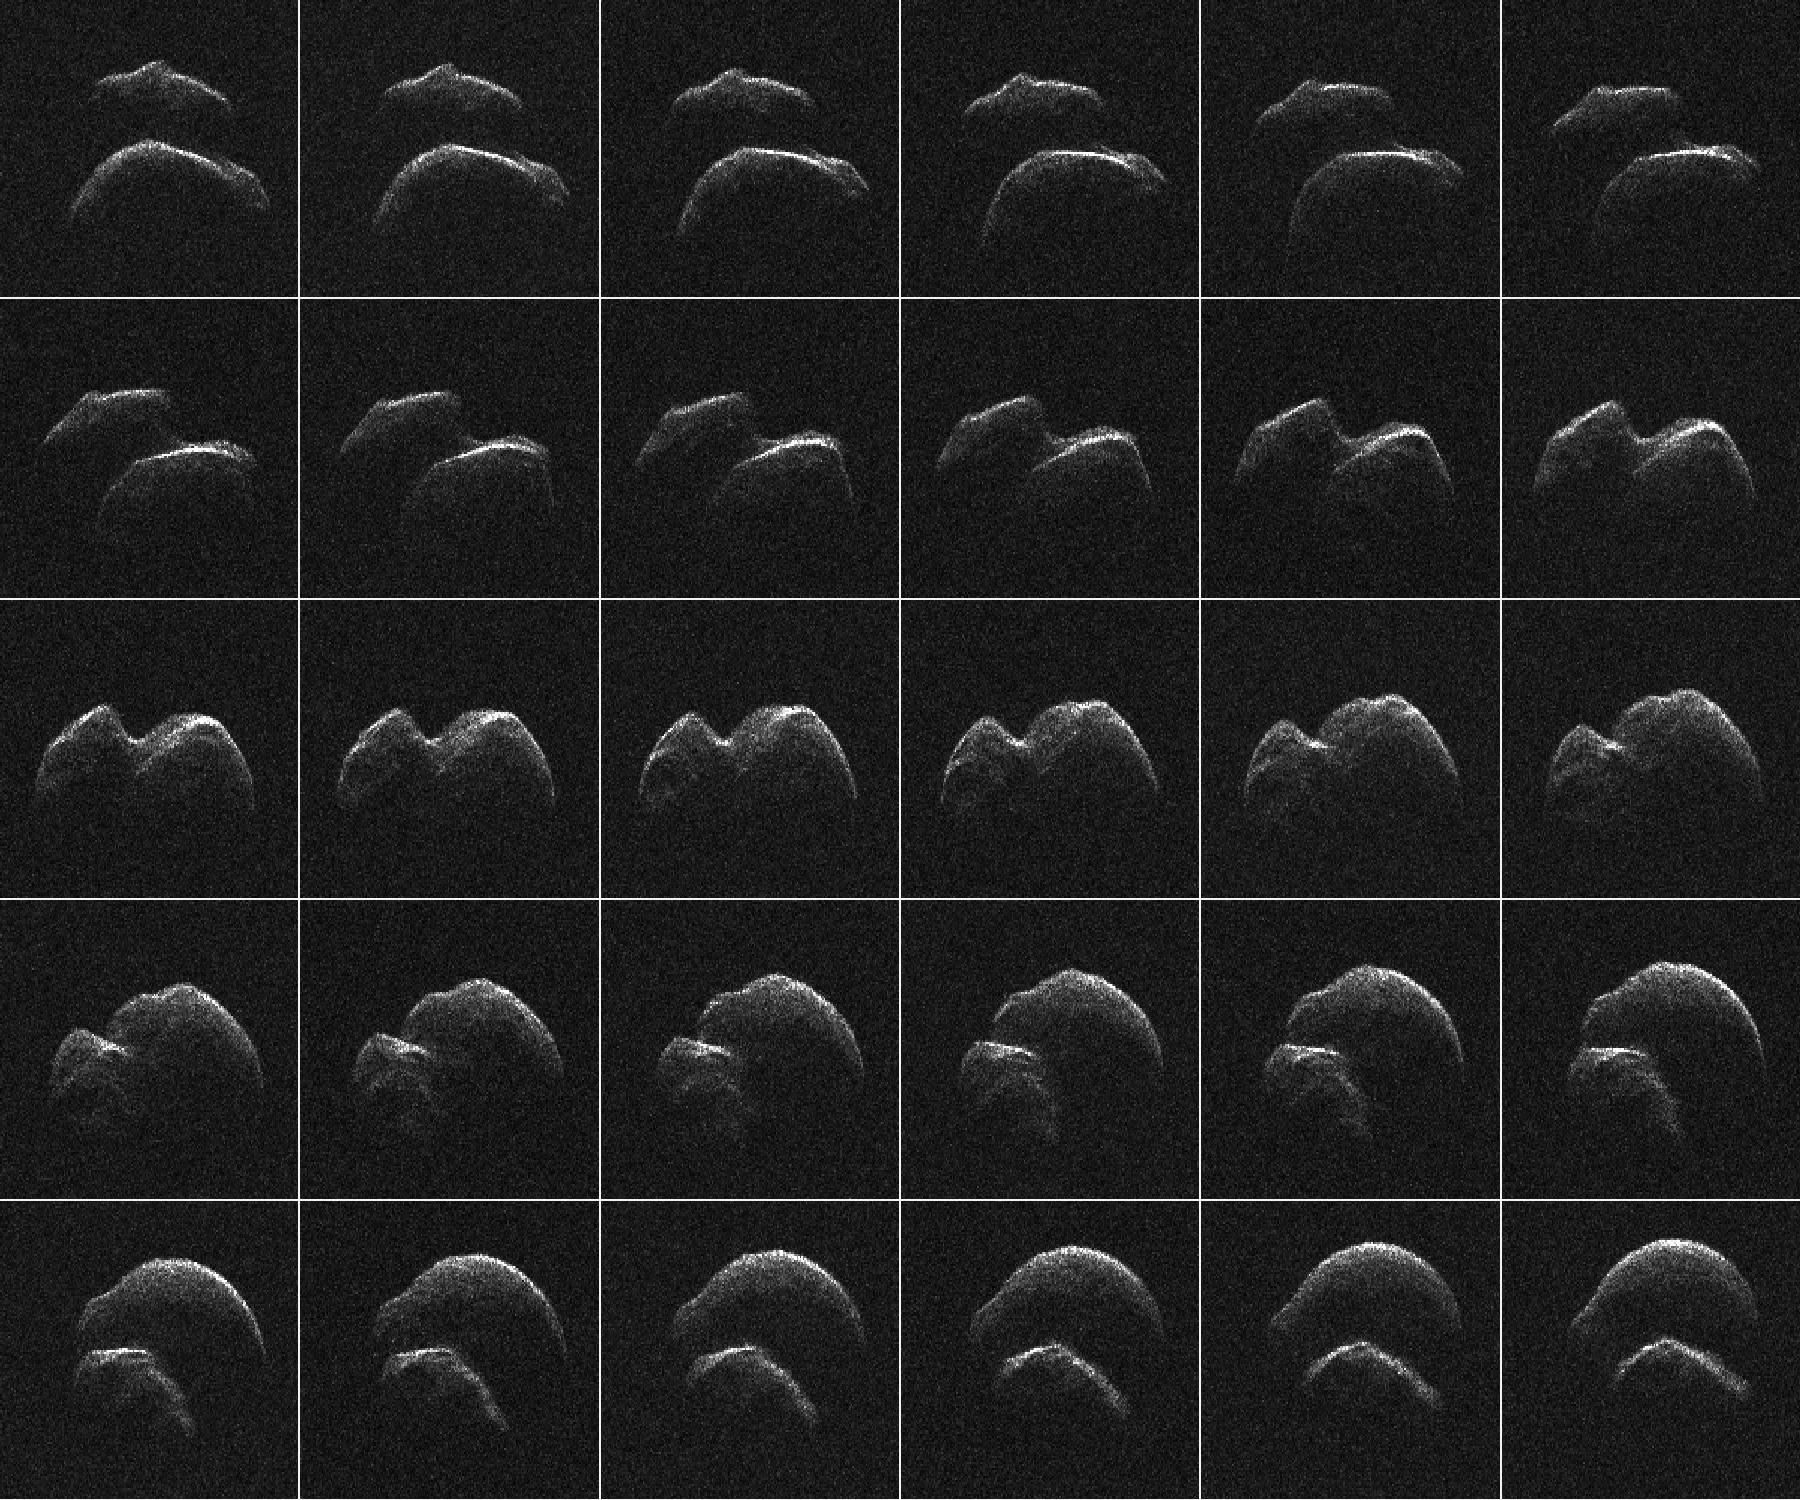 Premières images de l\'astéroïde 2014 JO25